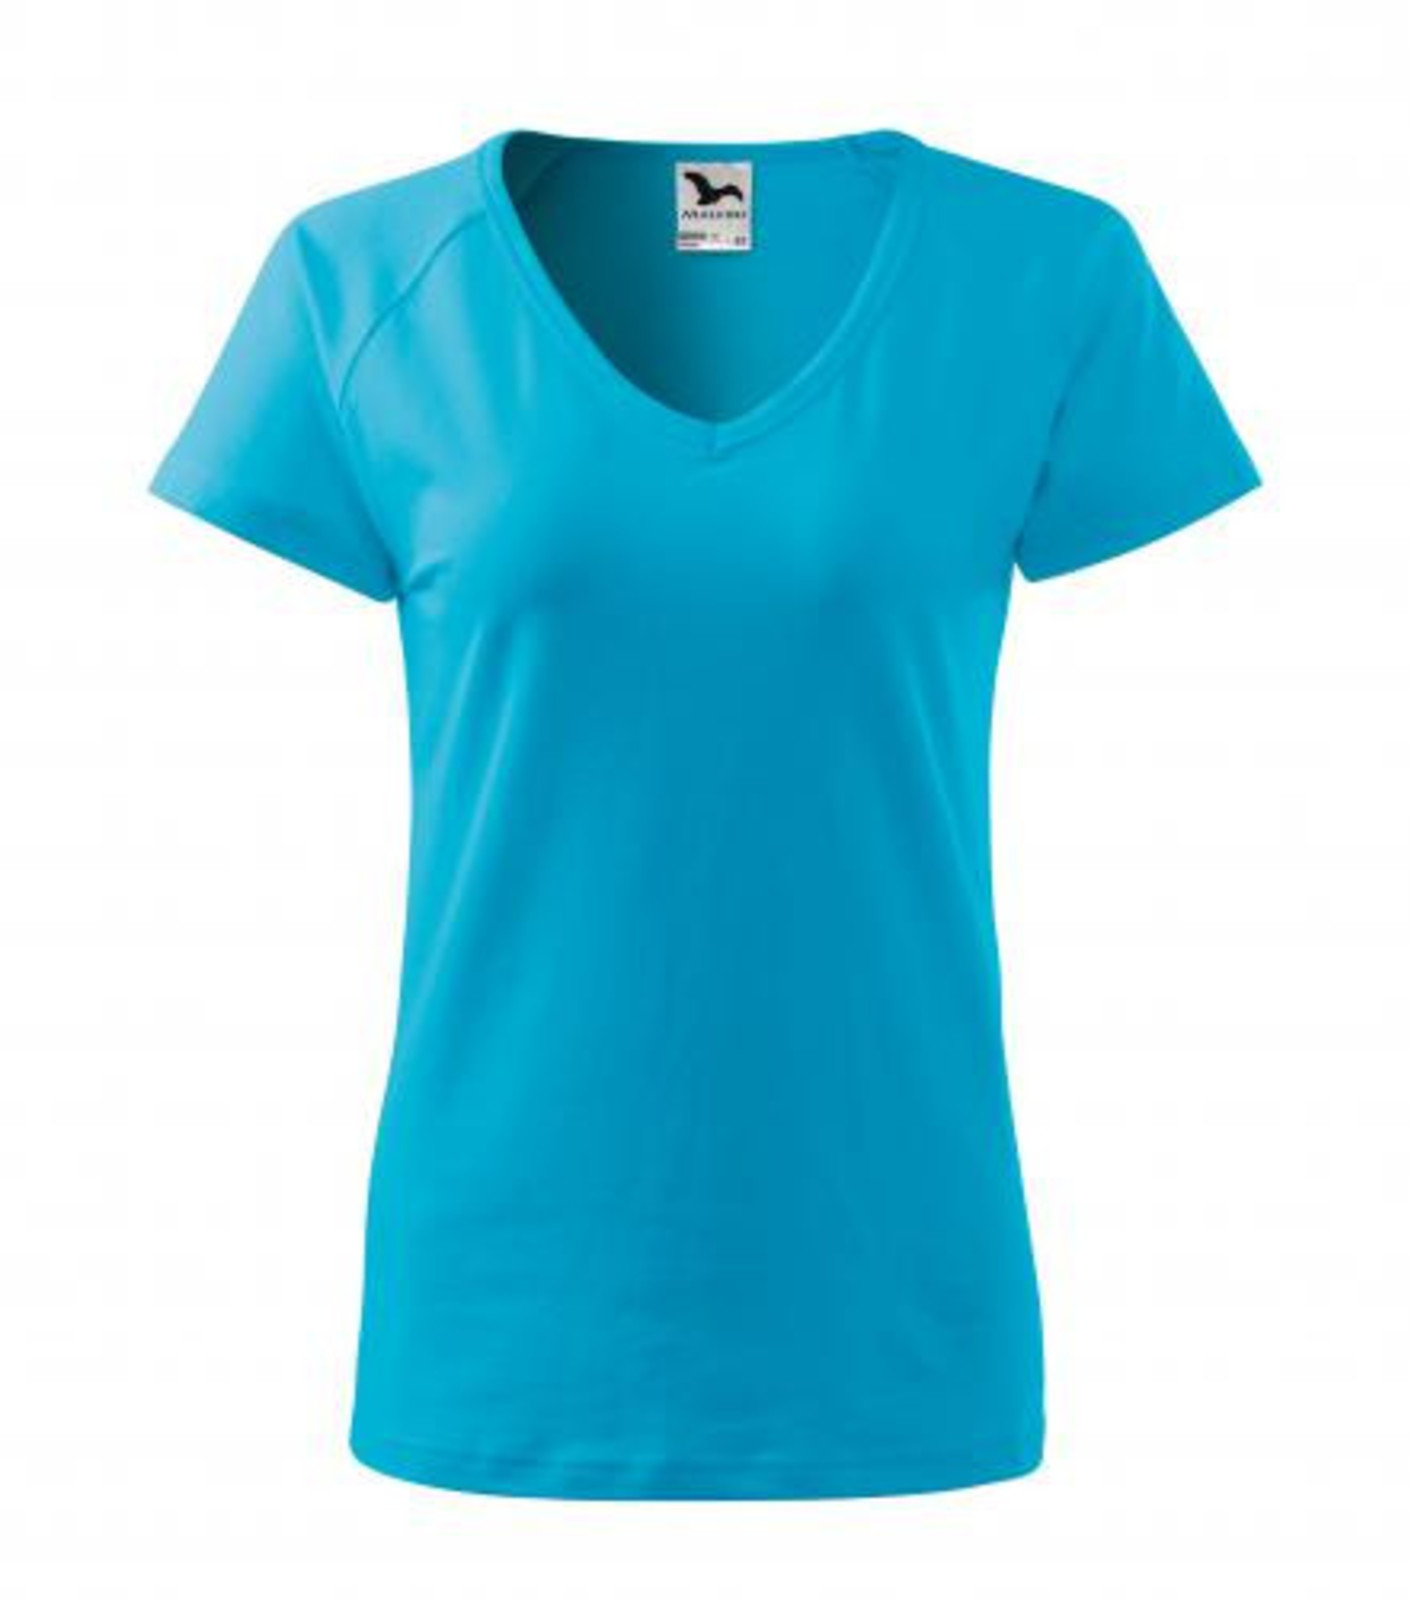 Dámske tričko s V výstrihom Adler Dream 128 - veľkosť: XXL, farba: tyrkysová